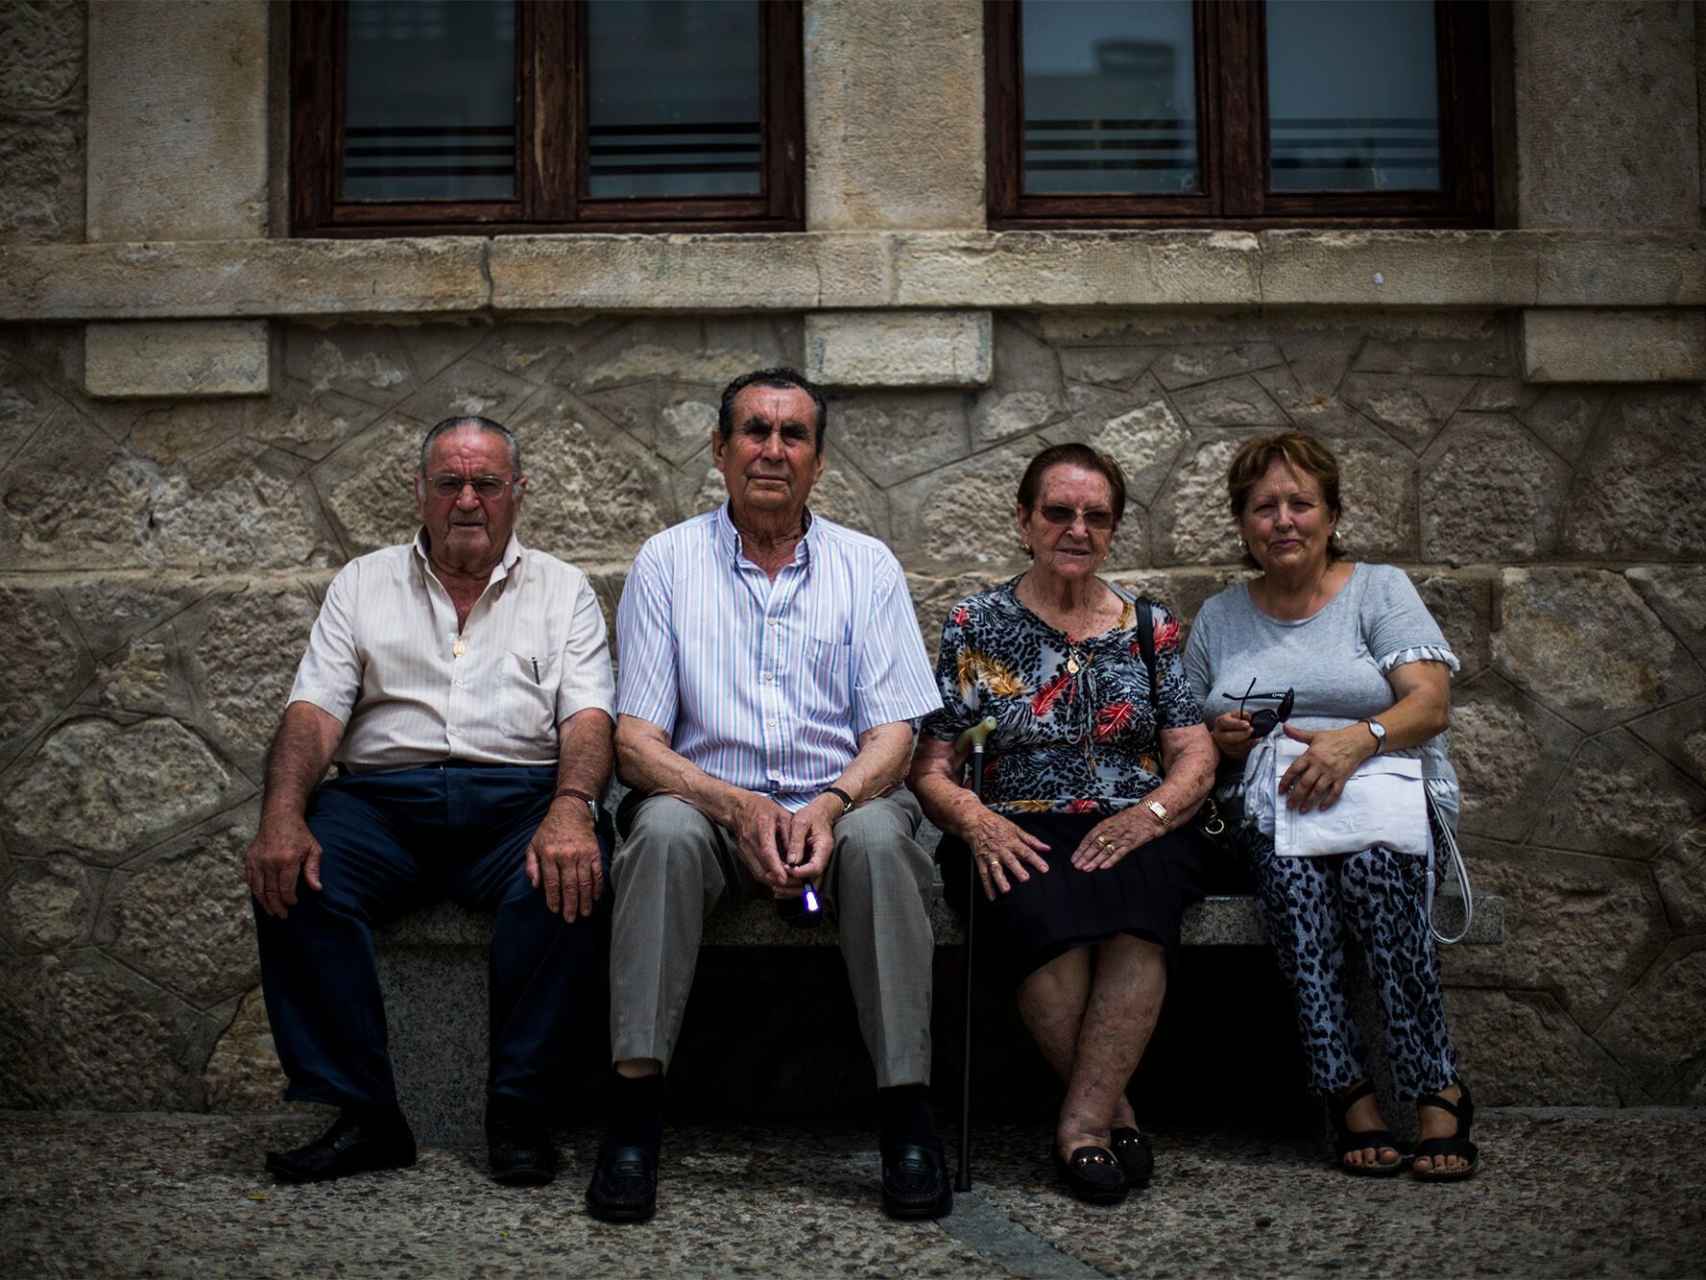 Los cuatro vecinos de Guadalix de la Sierra que participaron en el rodaje posan en un banco.